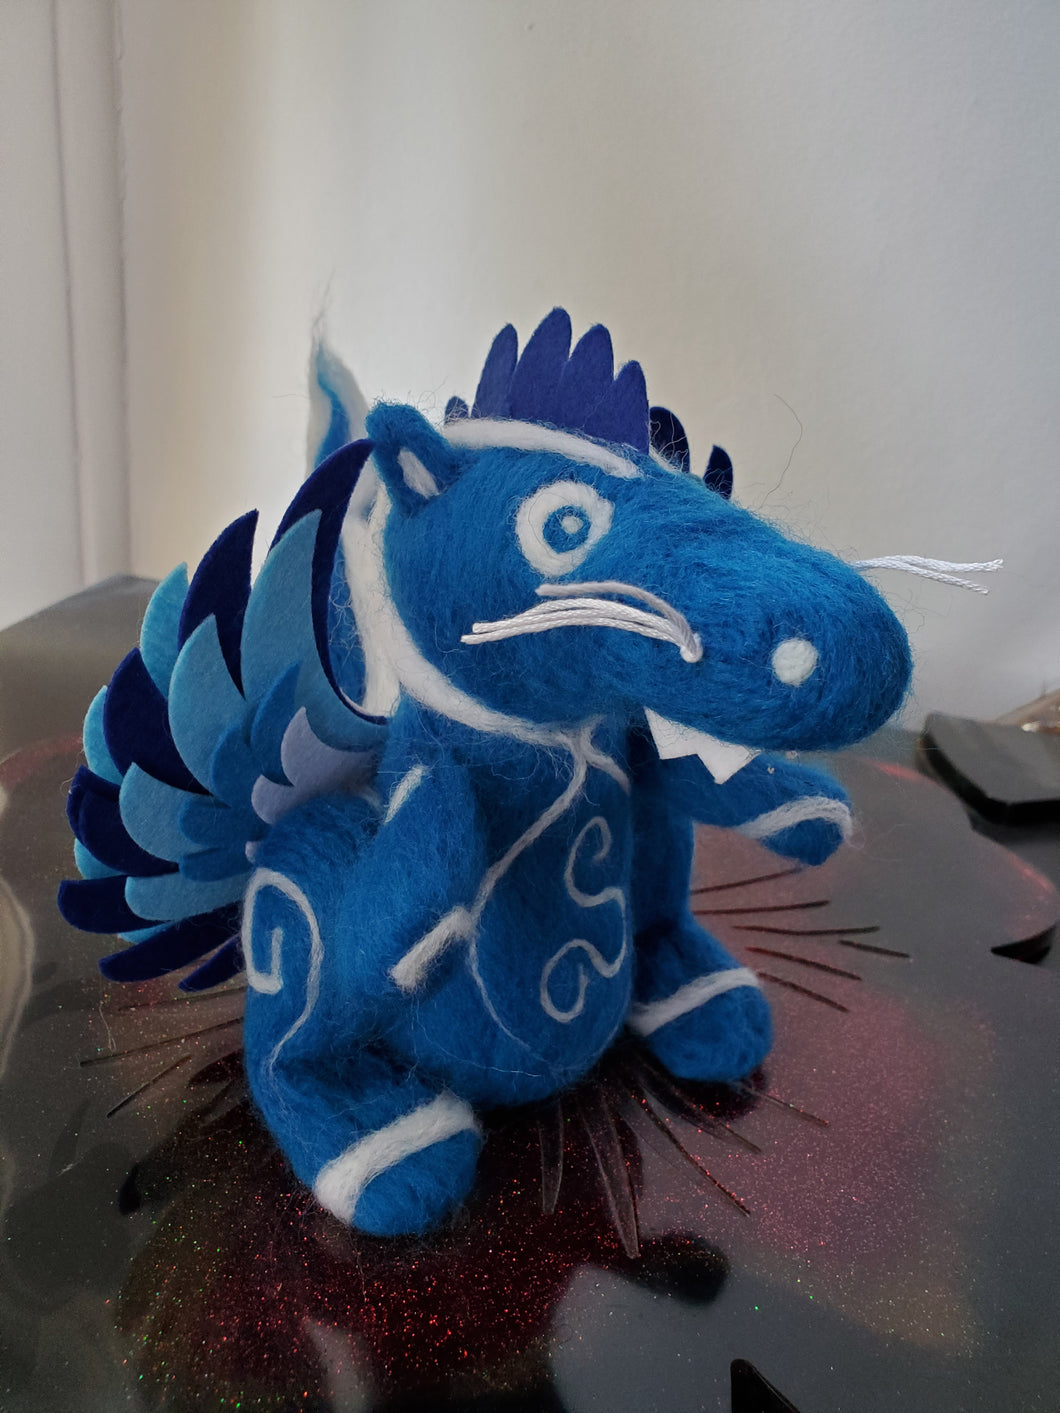 Phoenix Dragon, blue with white spirals